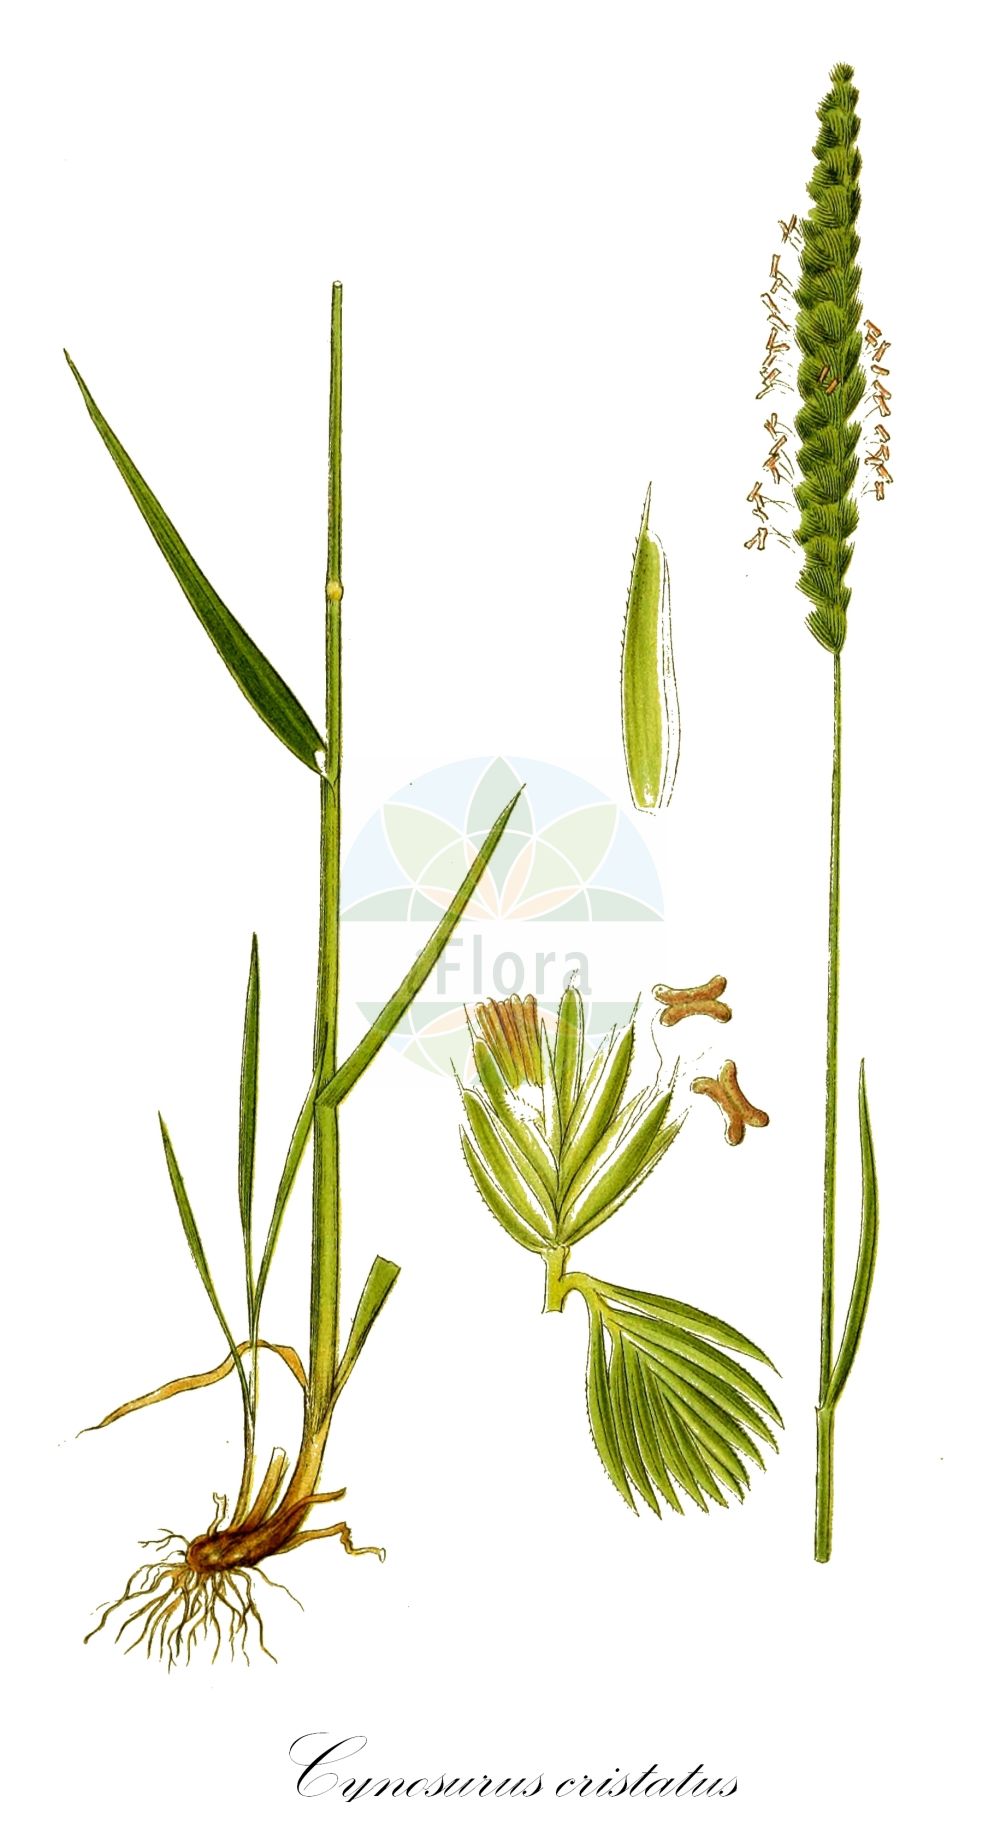 Historische Abbildung von Cynosurus cristatus (Wiesen-Kammgras - Crested Dog's-tail). Das Bild zeigt Blatt, Bluete, Frucht und Same. ---- Historical Drawing of Cynosurus cristatus (Wiesen-Kammgras - Crested Dog's-tail). The image is showing leaf, flower, fruit and seed.(Cynosurus cristatus,Wiesen-Kammgras,Crested Dog's-tail,Cynosurus cristatus,Wiesen-Kammgras,Weide-Kammgras,Crested Dog's-tail,Crested Dogstail Grass,Crested Dog-tail Grass,Cynosurus,Kammgras,Dogstail Grass,Poaceae,Süßgräser,Grass family,Blatt,Bluete,Frucht,Same,leaf,flower,fruit,seed,Lindman (1901-1905))